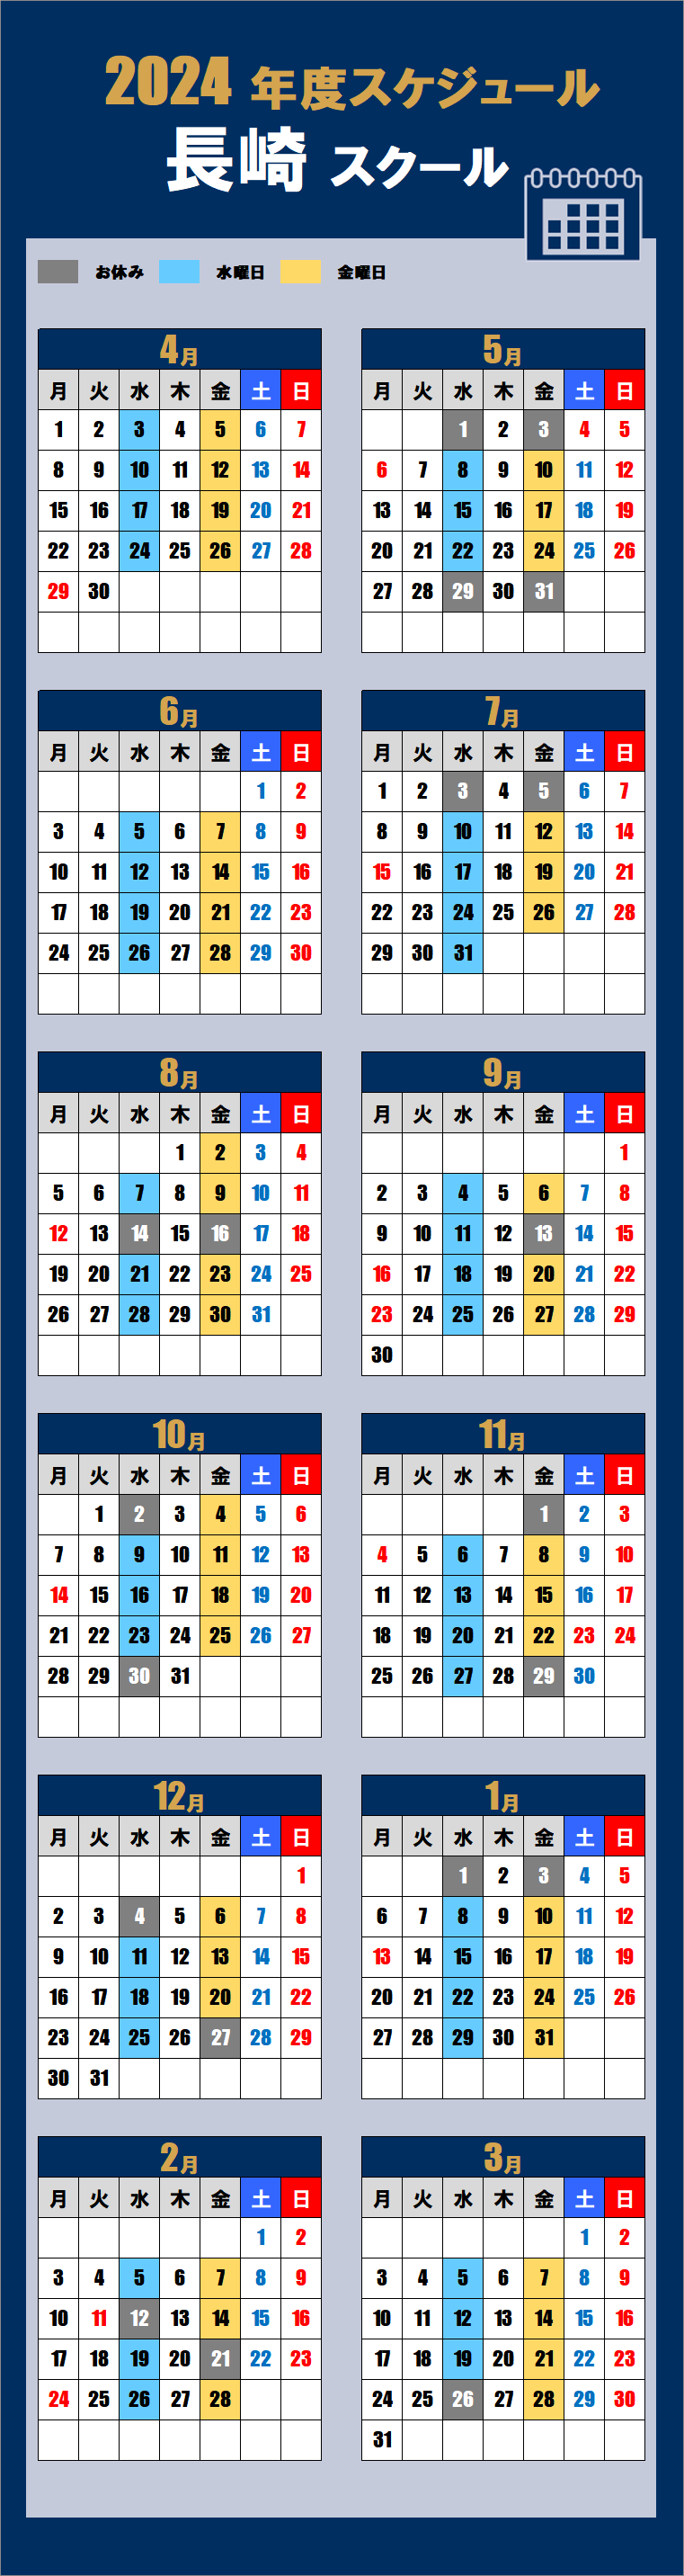 2024長崎スクールカレンダー